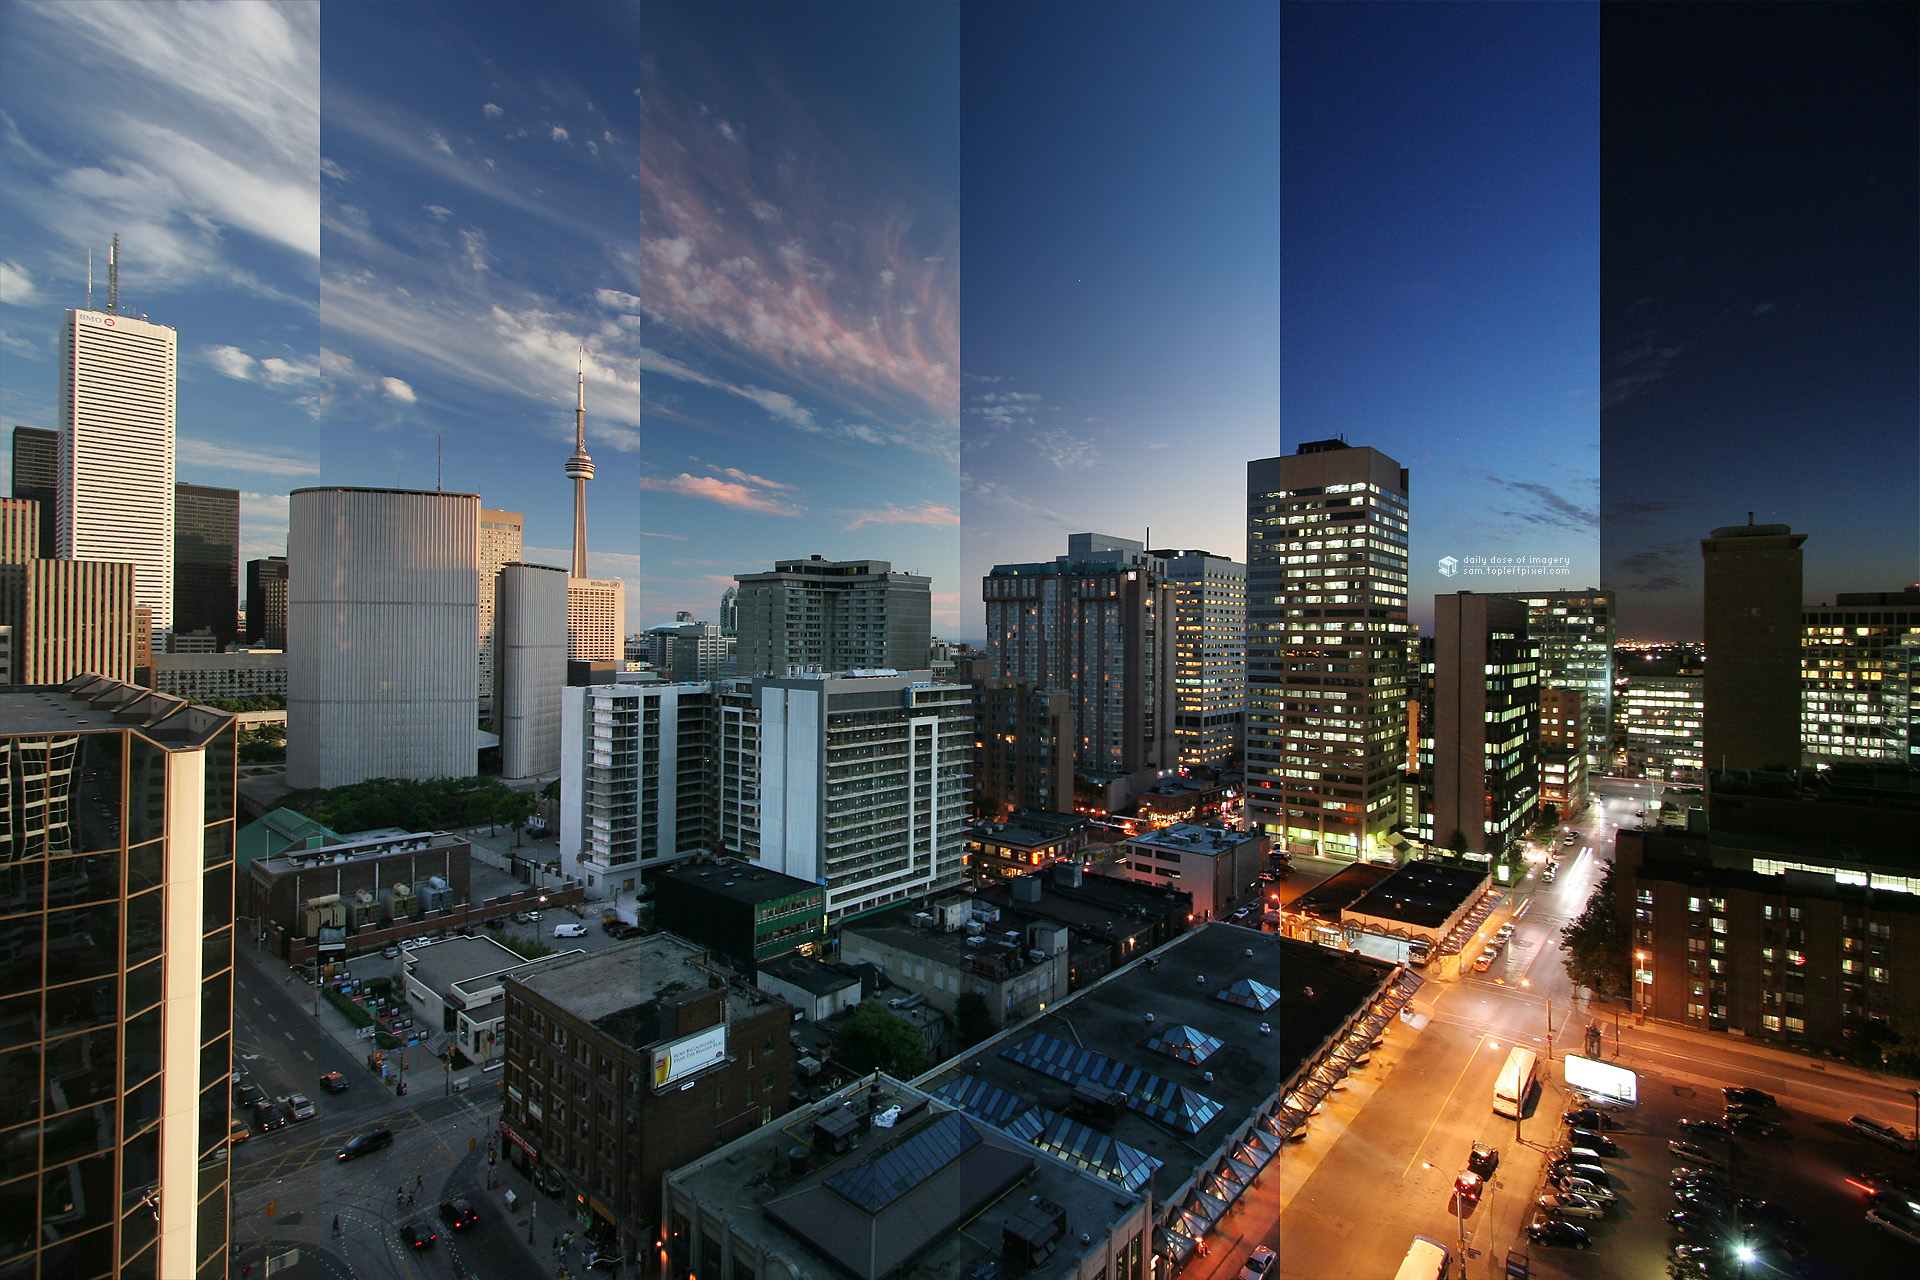 Популярные заставки и фоны Торонто на компьютер